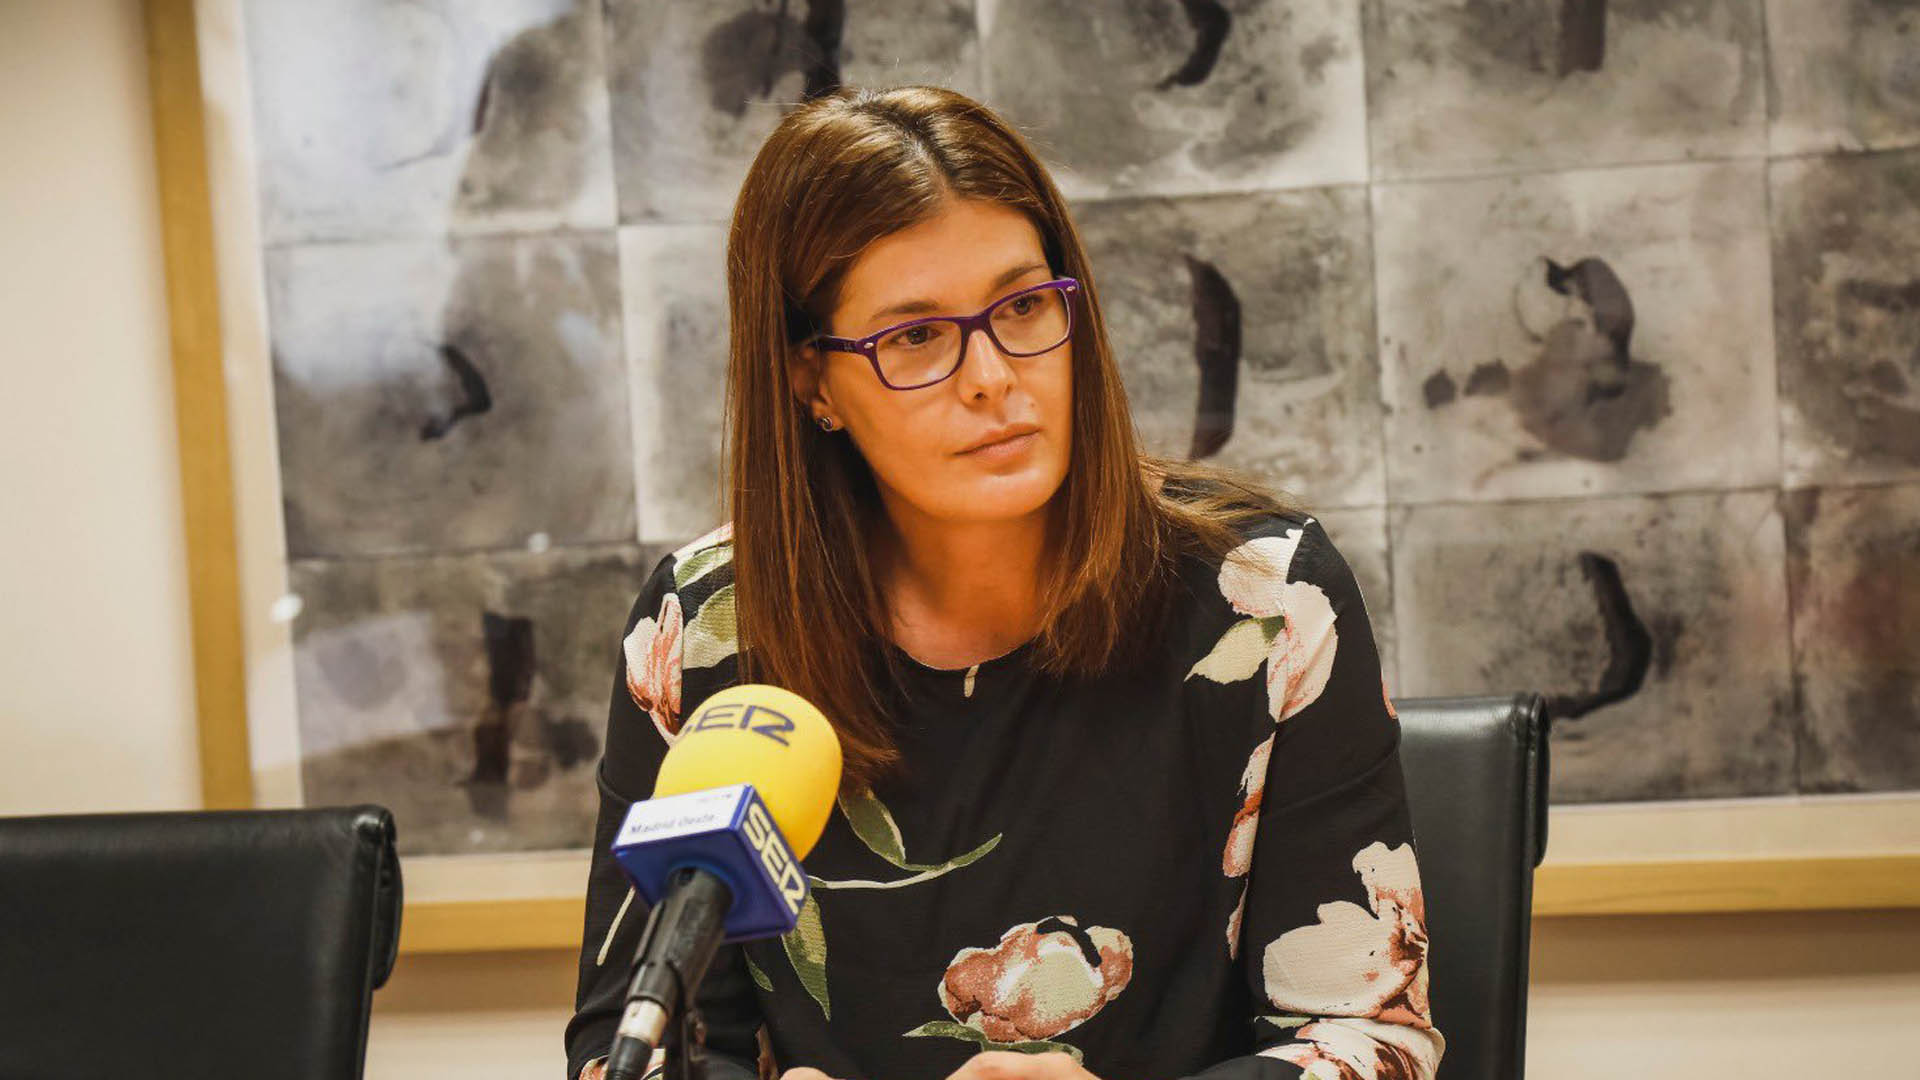 La alcaldesa de Móstoles pide la suspensión cautelar de su militancia en el PSOE